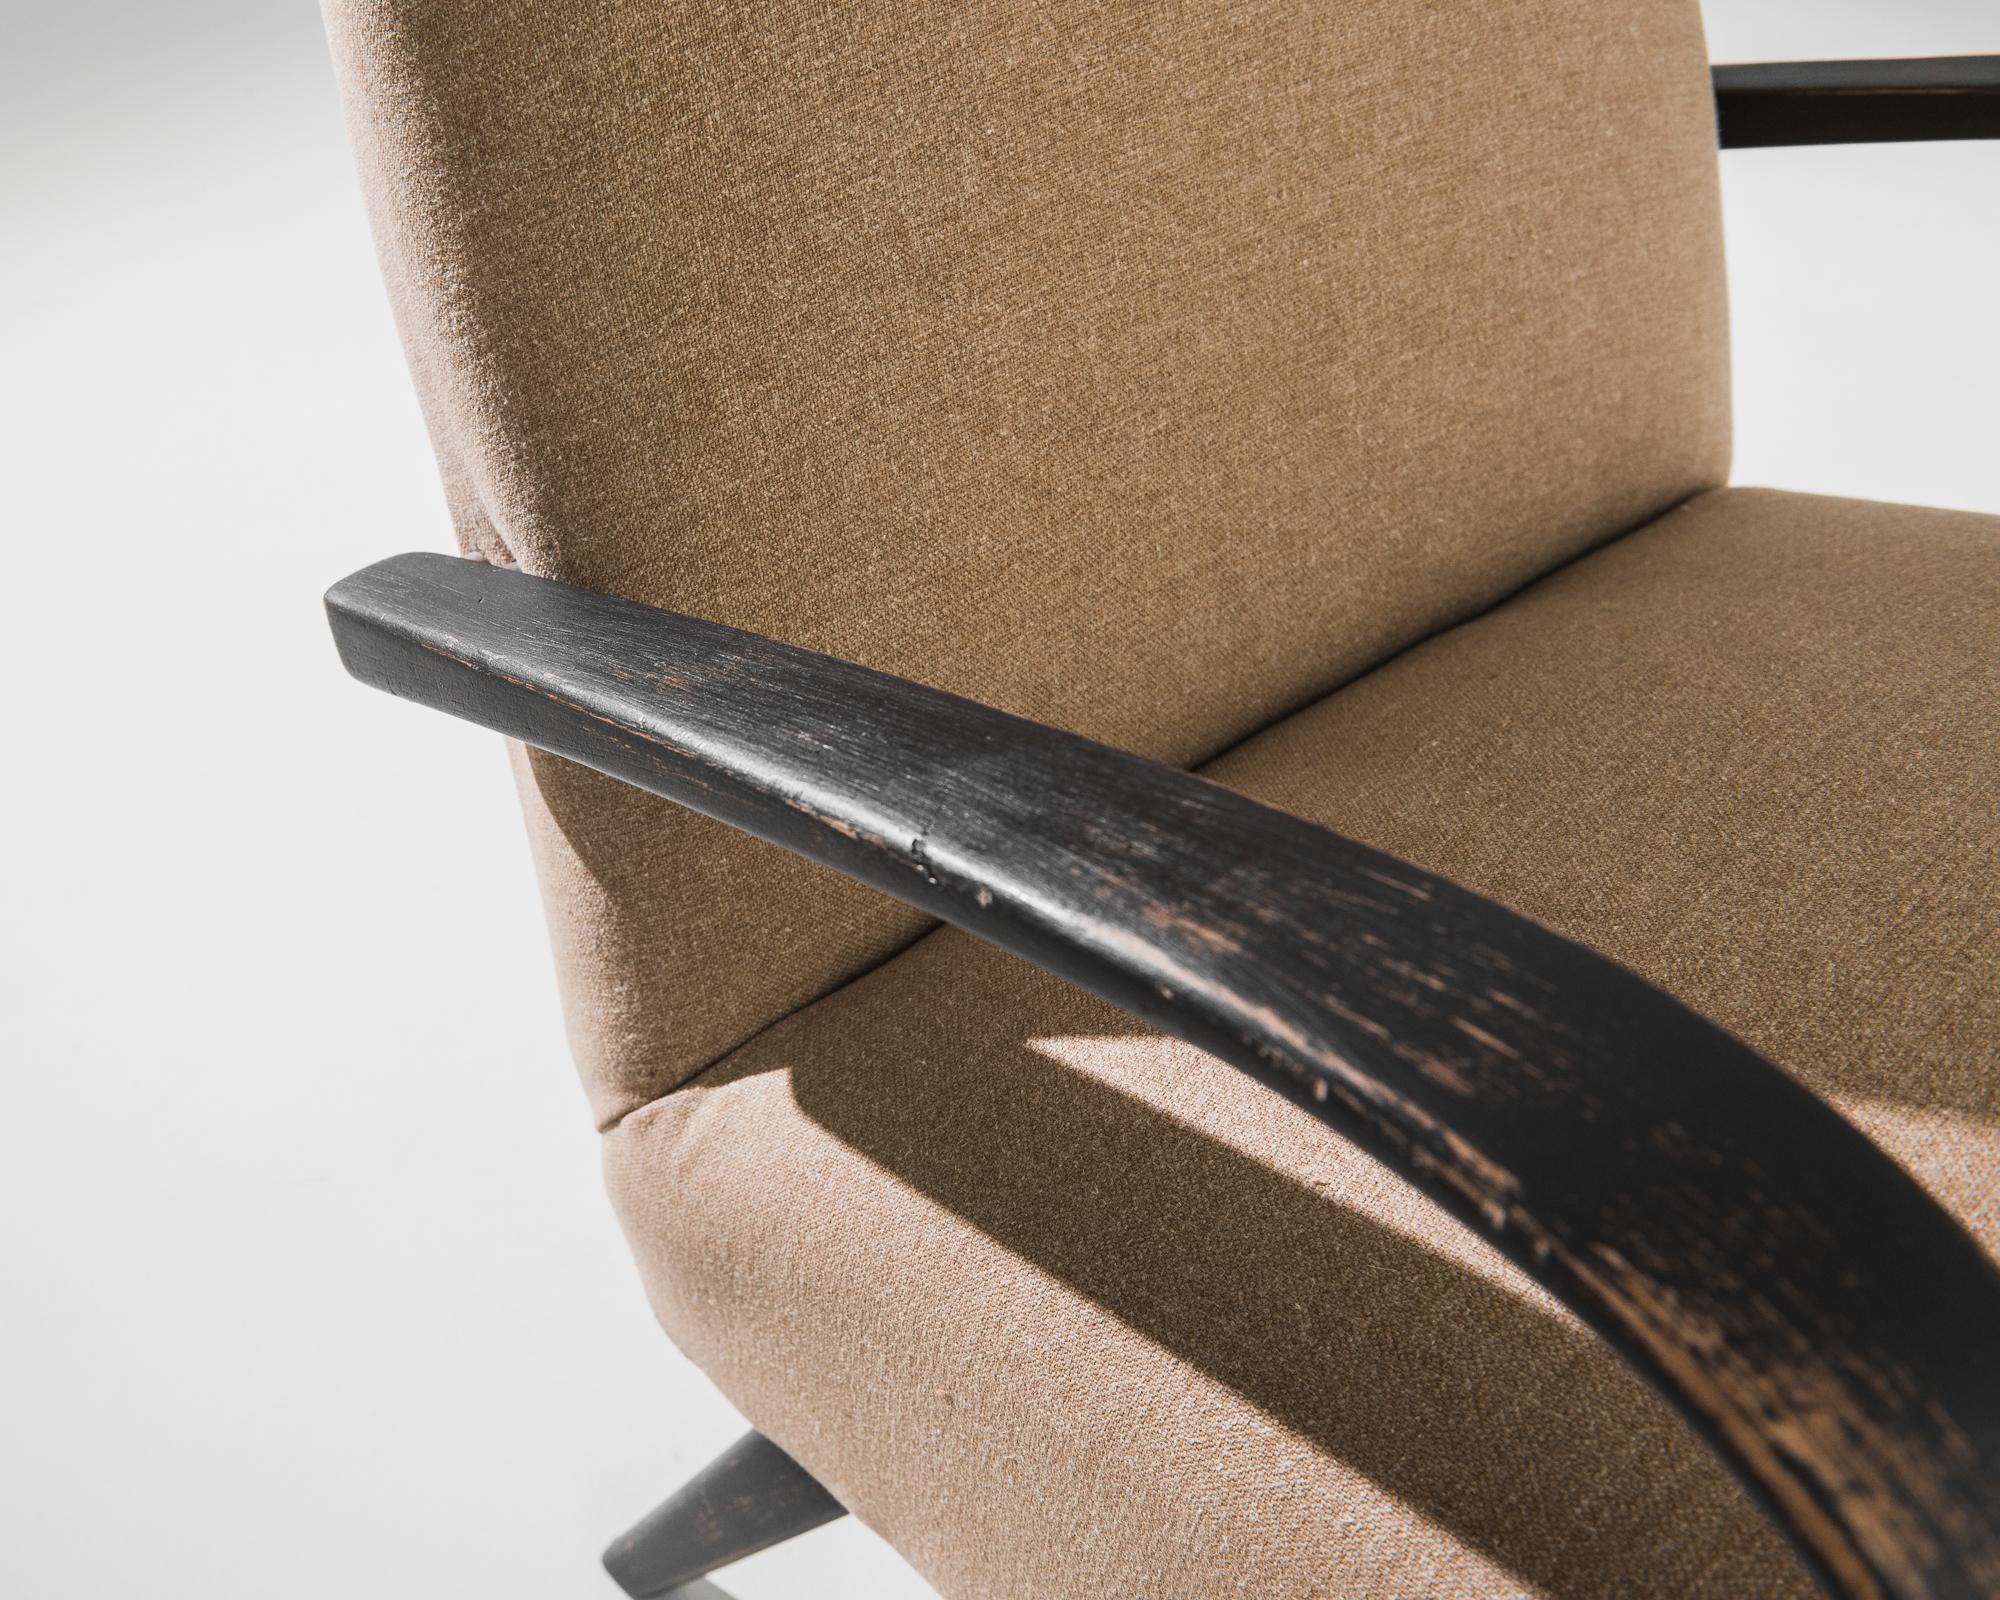 Un fauteuil du designer de meubles tchèque Jindrich Halabala. Ce modèle des années 1950 est revêtu d'un tissu marron moderne. Ce ton de terre apaisant a été choisi pour compléter le noir texturé de la structure en bois dur. Influencées par le design